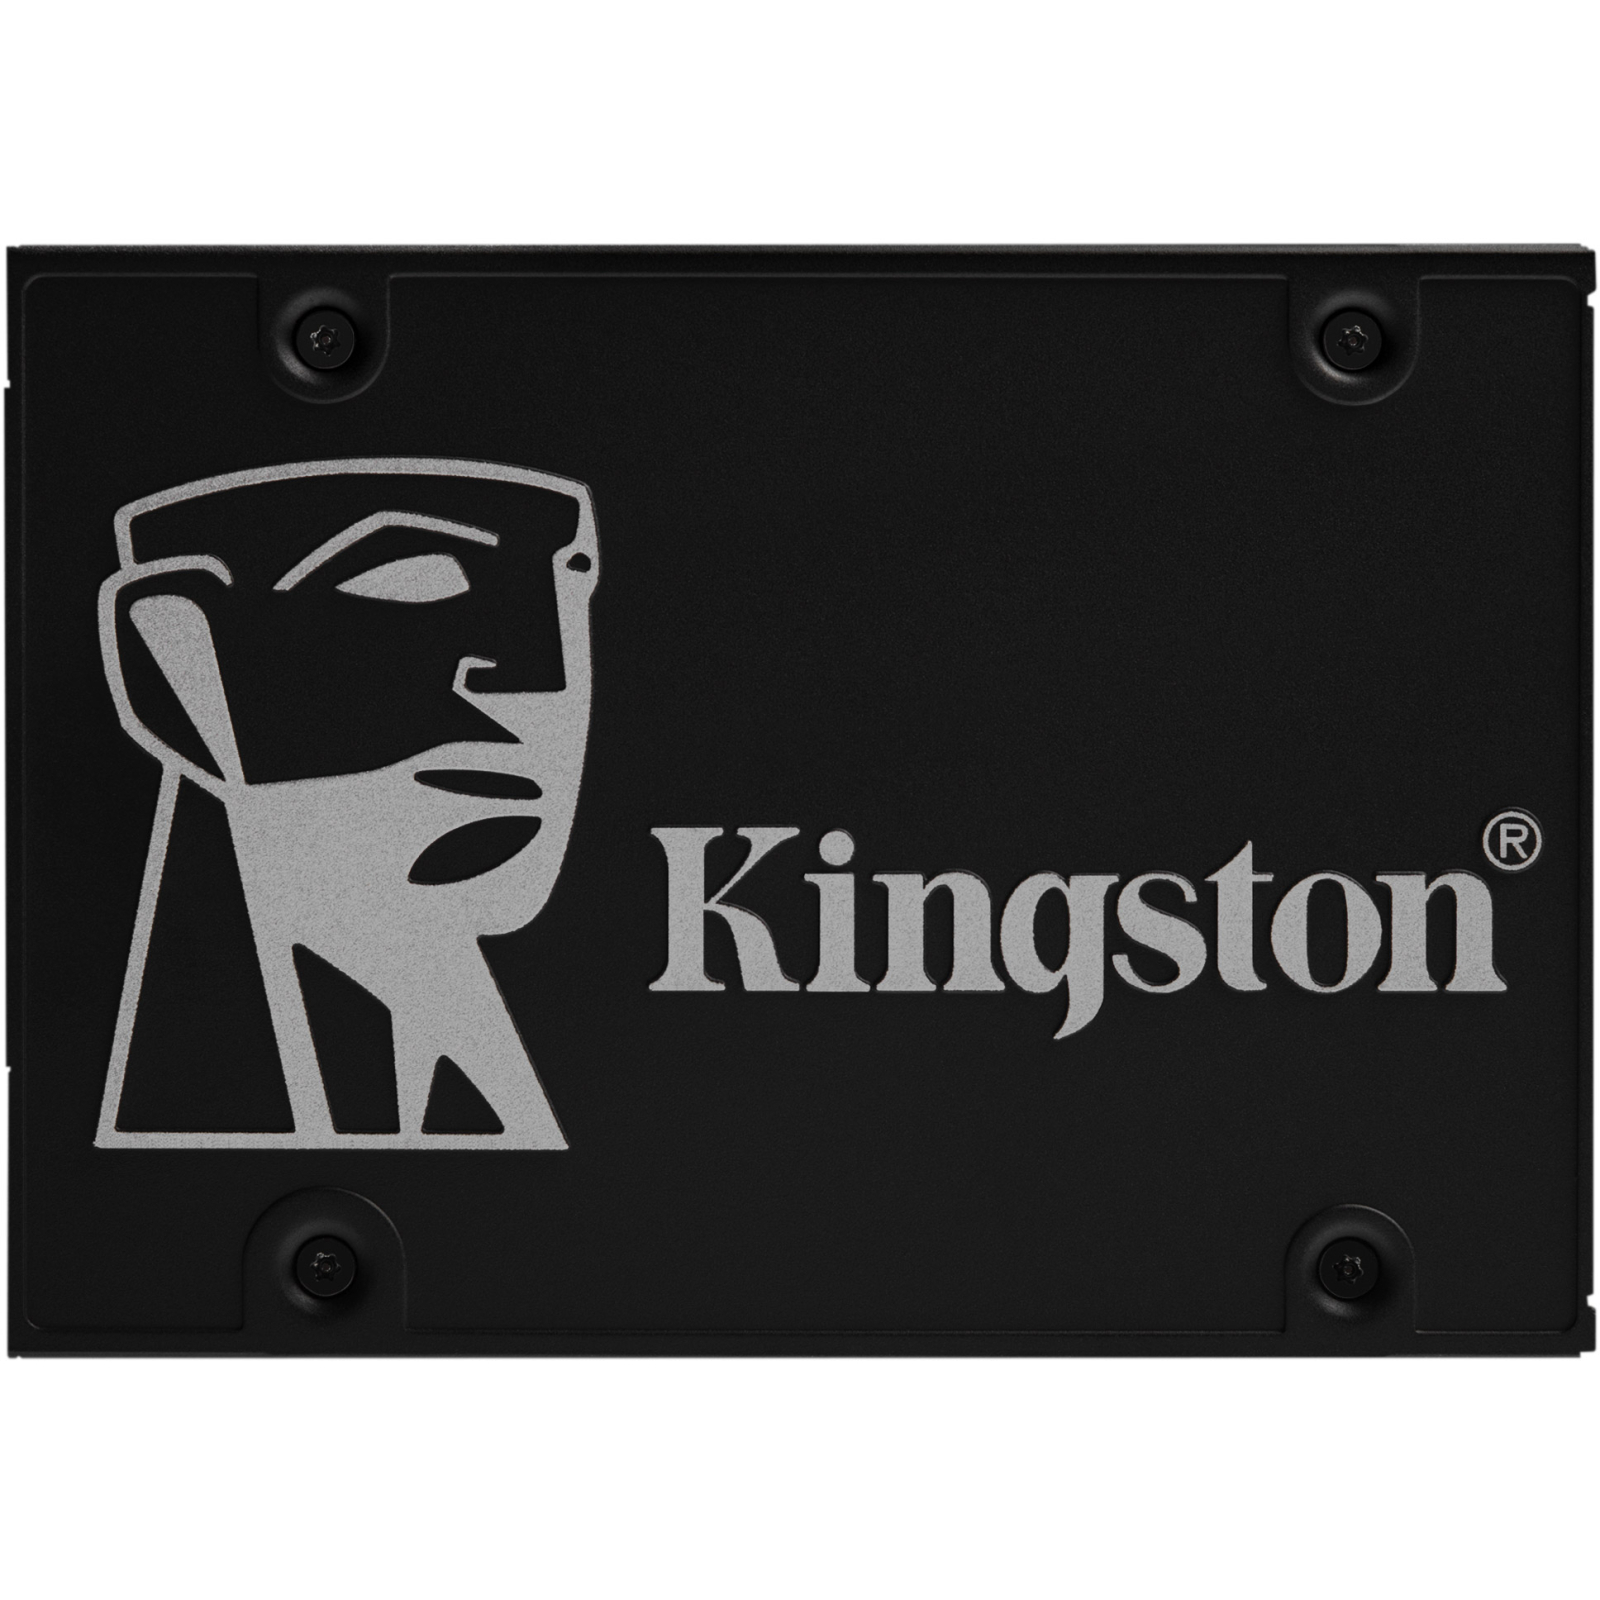 Накопитель SSD 2.5" 256GB Kingston (SKC600B/256G)